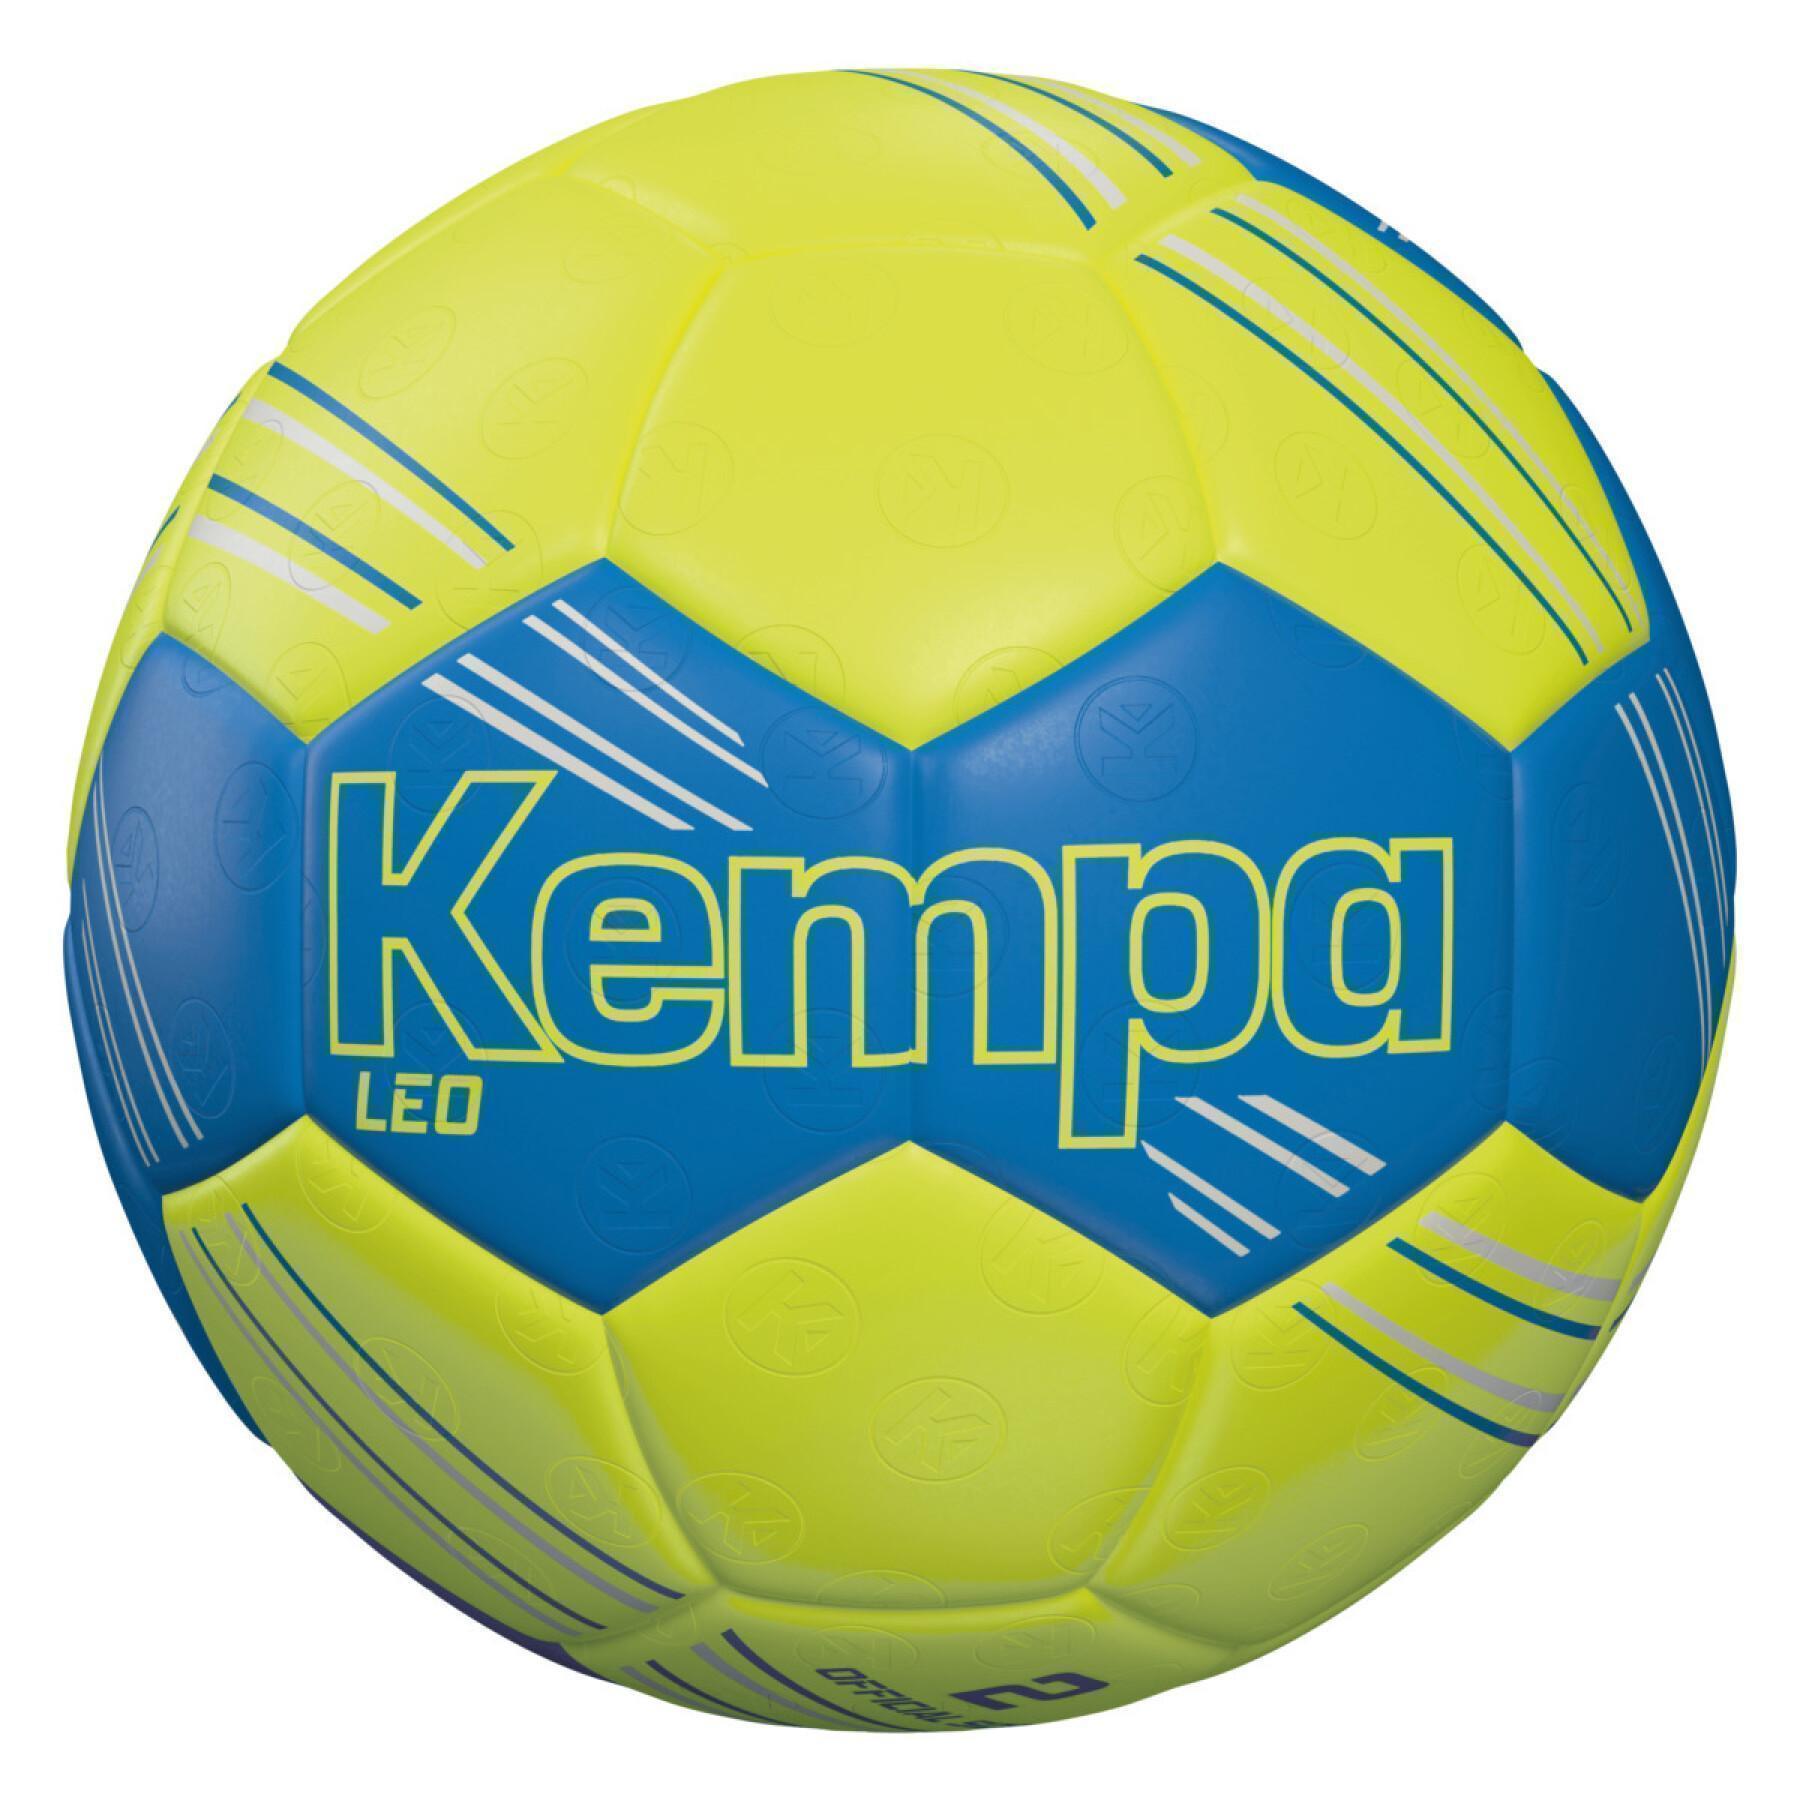 Handball Kempa Leo